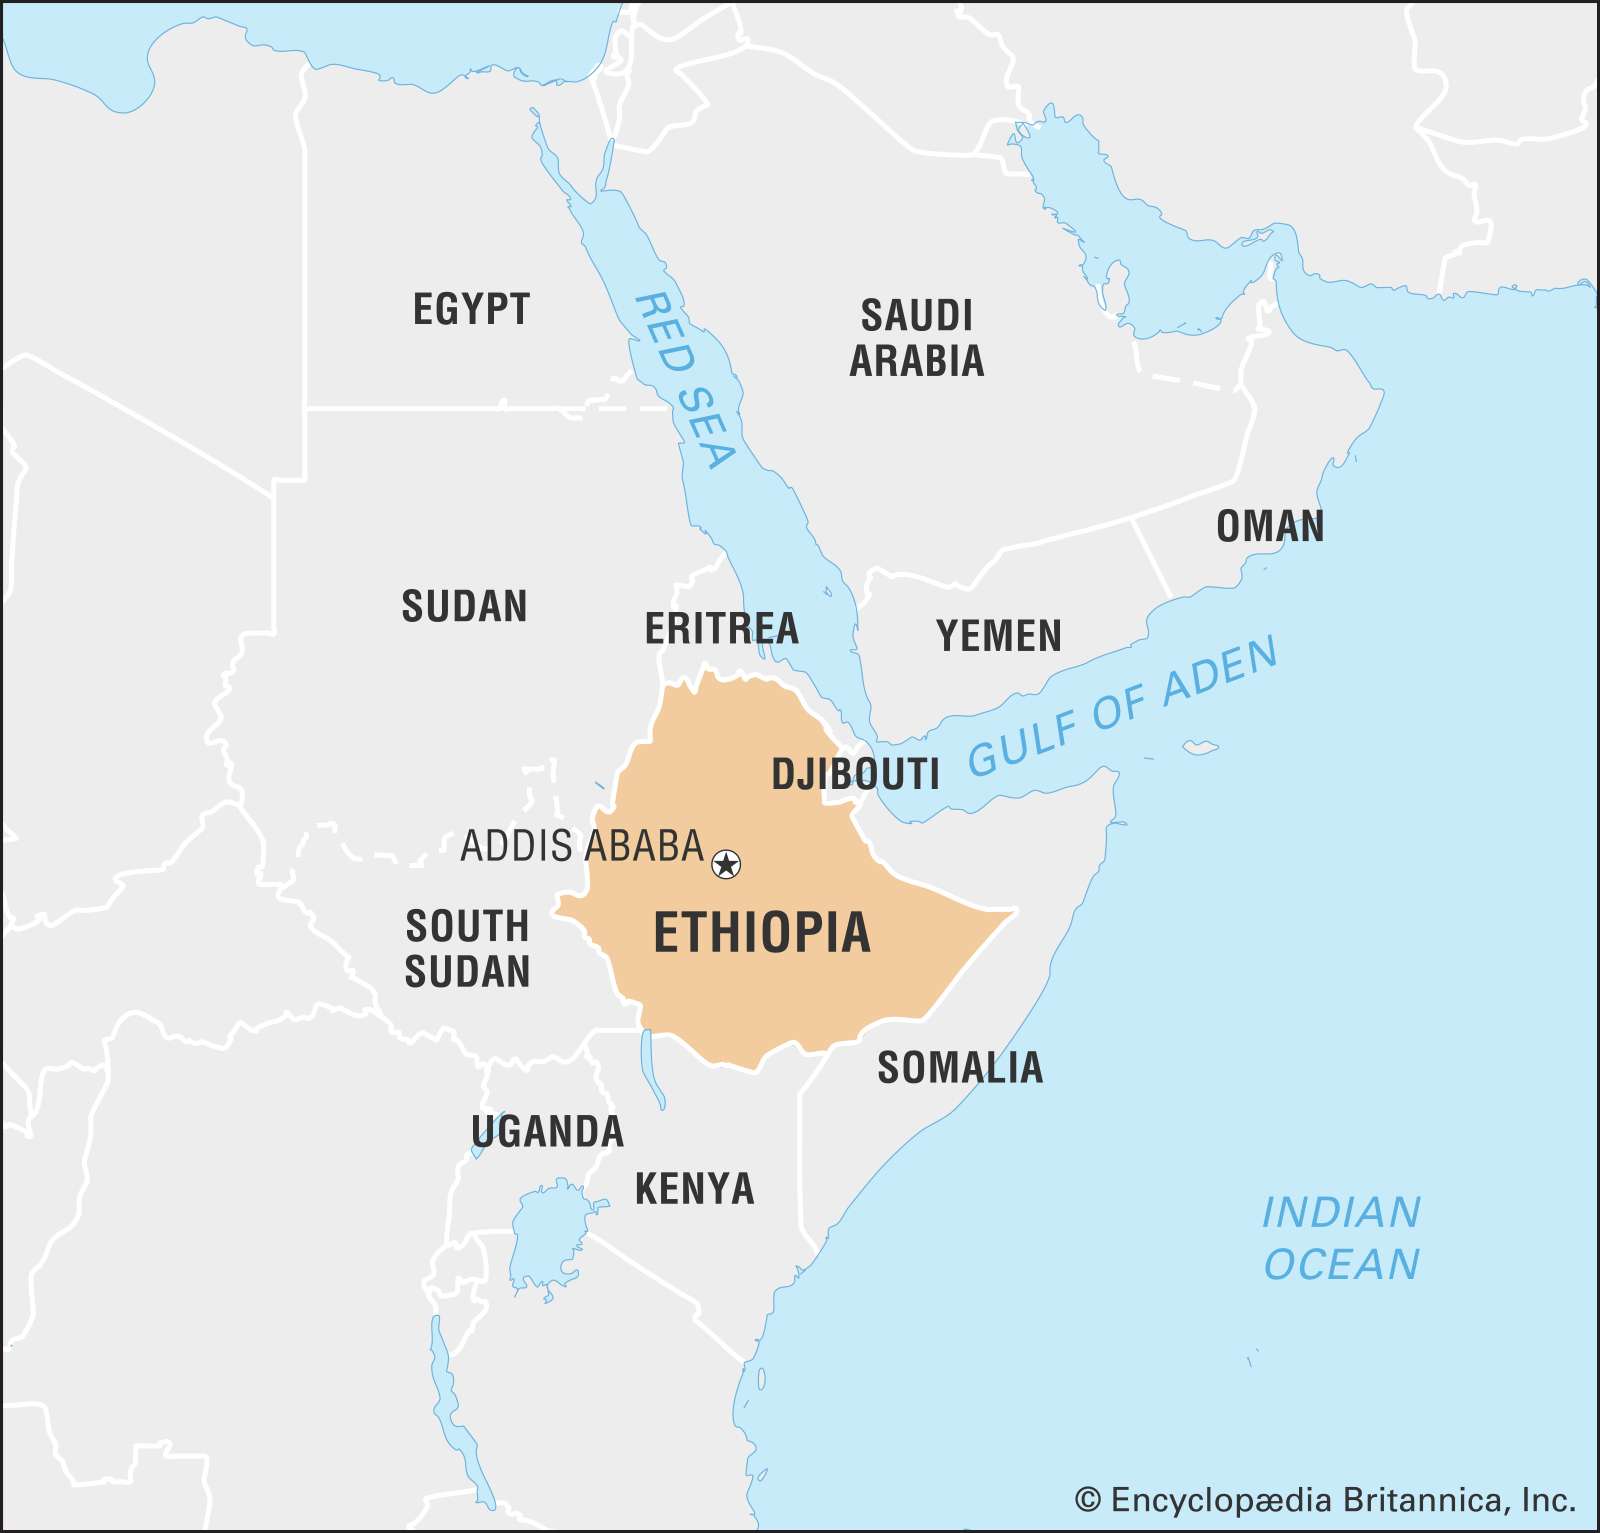 Αιθιοπία: Η Ουάσινγκτον καταδικάζει τις επιθέσεις των δυνάμεων του Τιγκράι εναντίον της Ερυθραίας